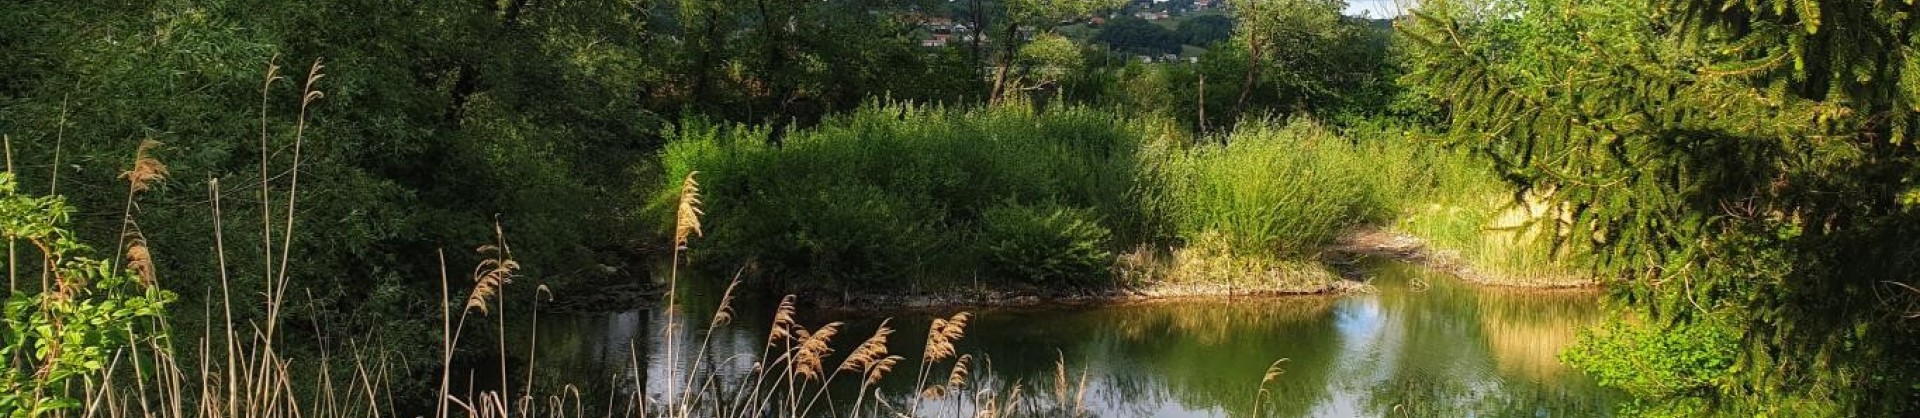 Jezero oslusevci ormoz haloze moja jezera jezera slovenije manca korelc 2 sl